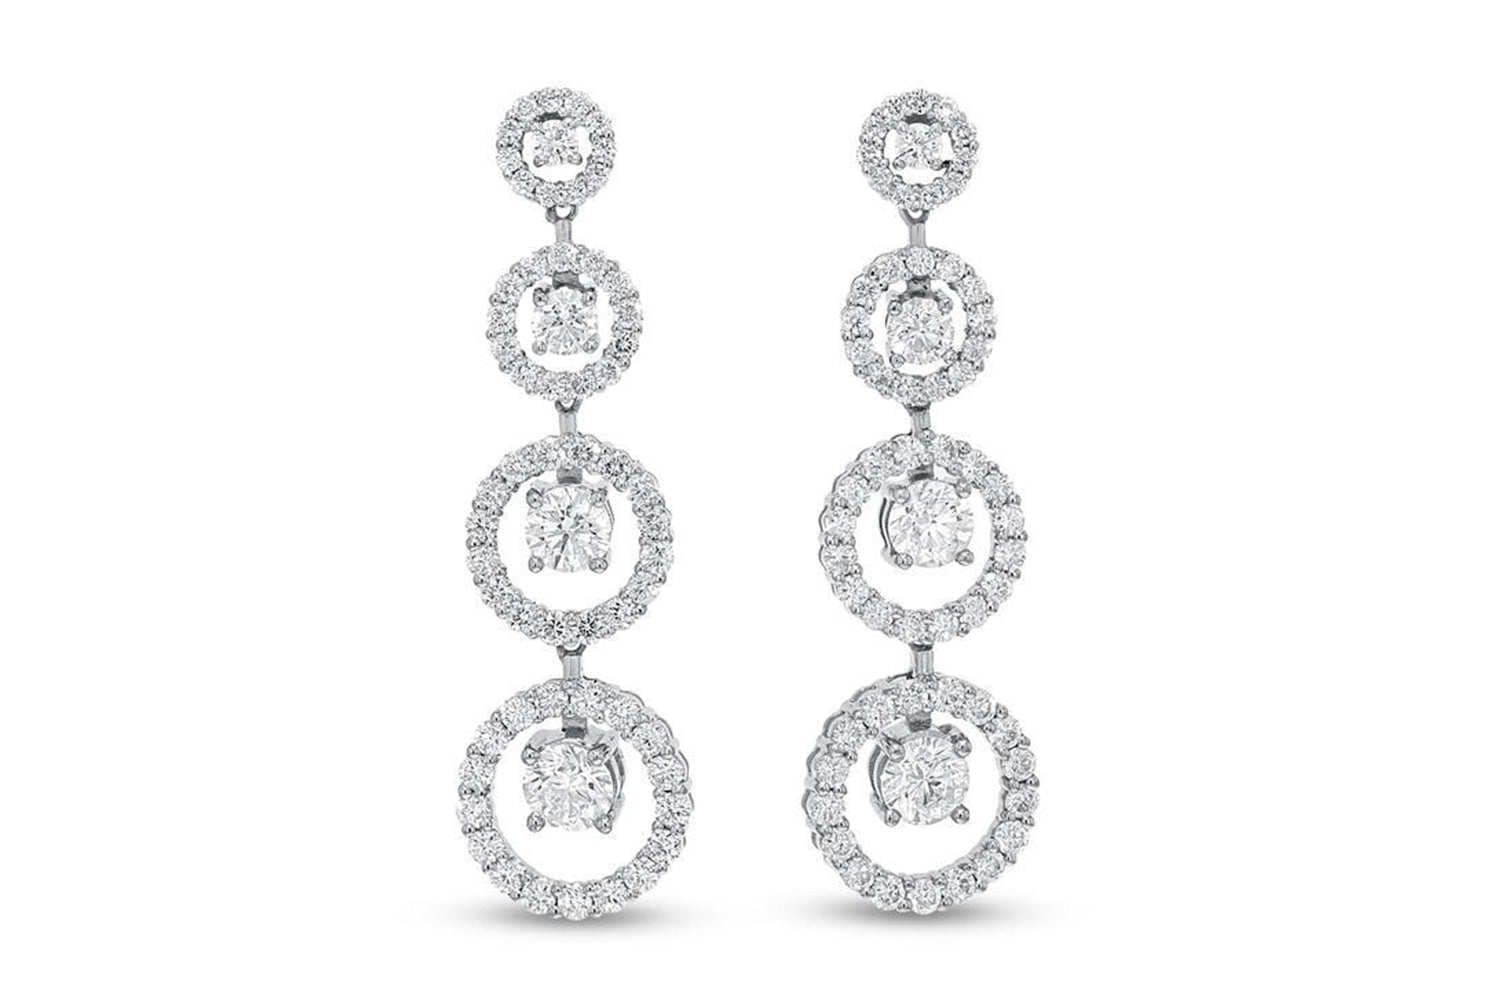 'Joanne' 18K White Gold Diamond Earrings, 4.32 Carats